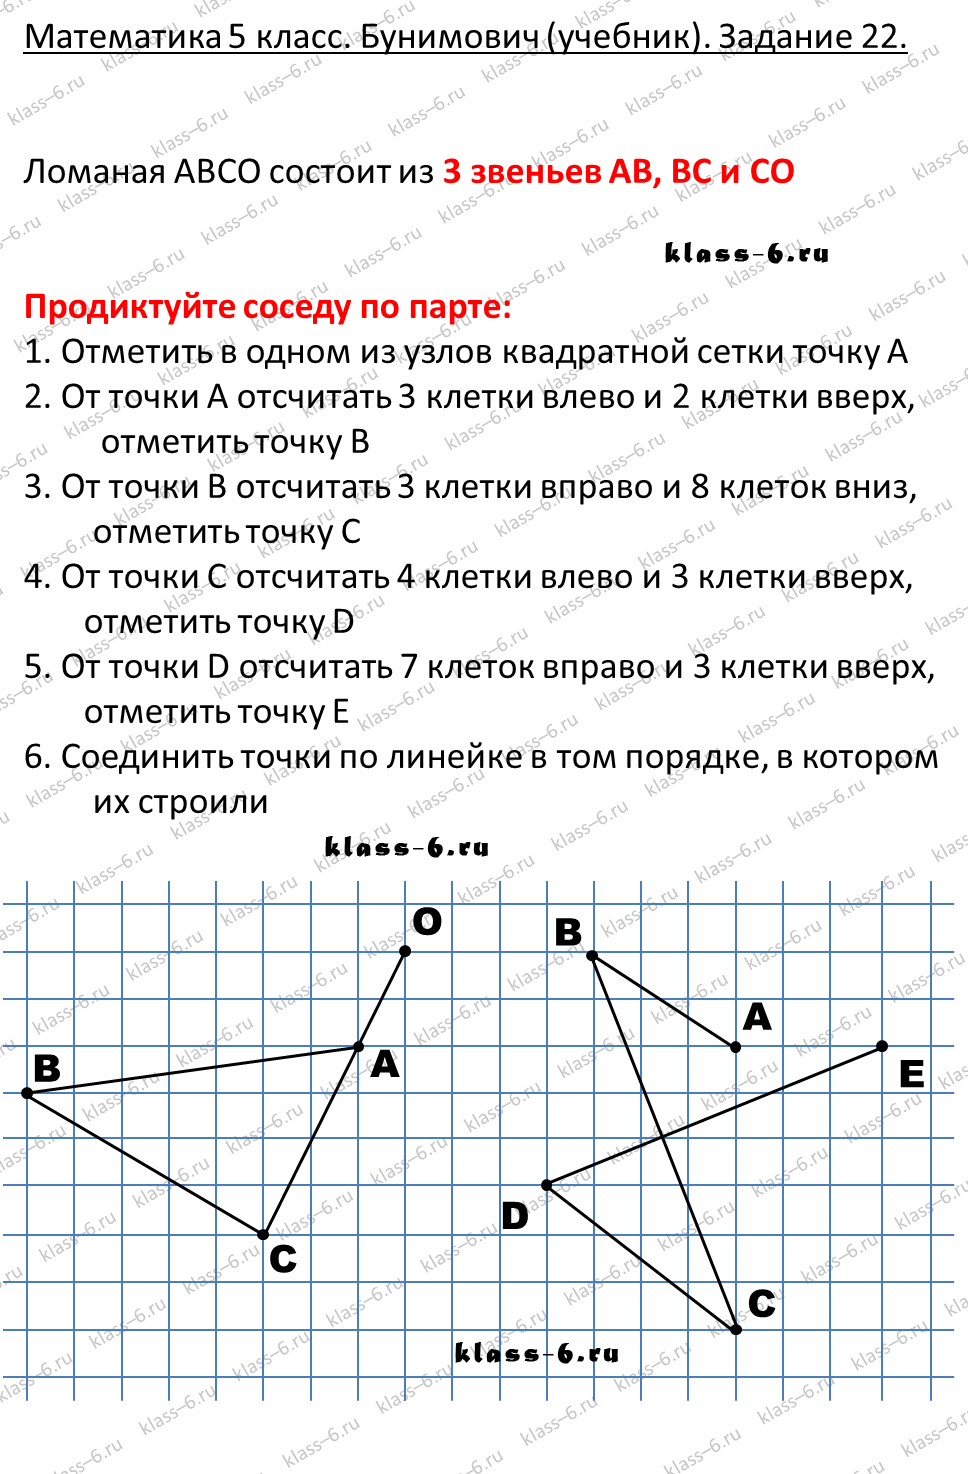 решебник и гдз по математике учебник Бунимович 5 класс задание 22